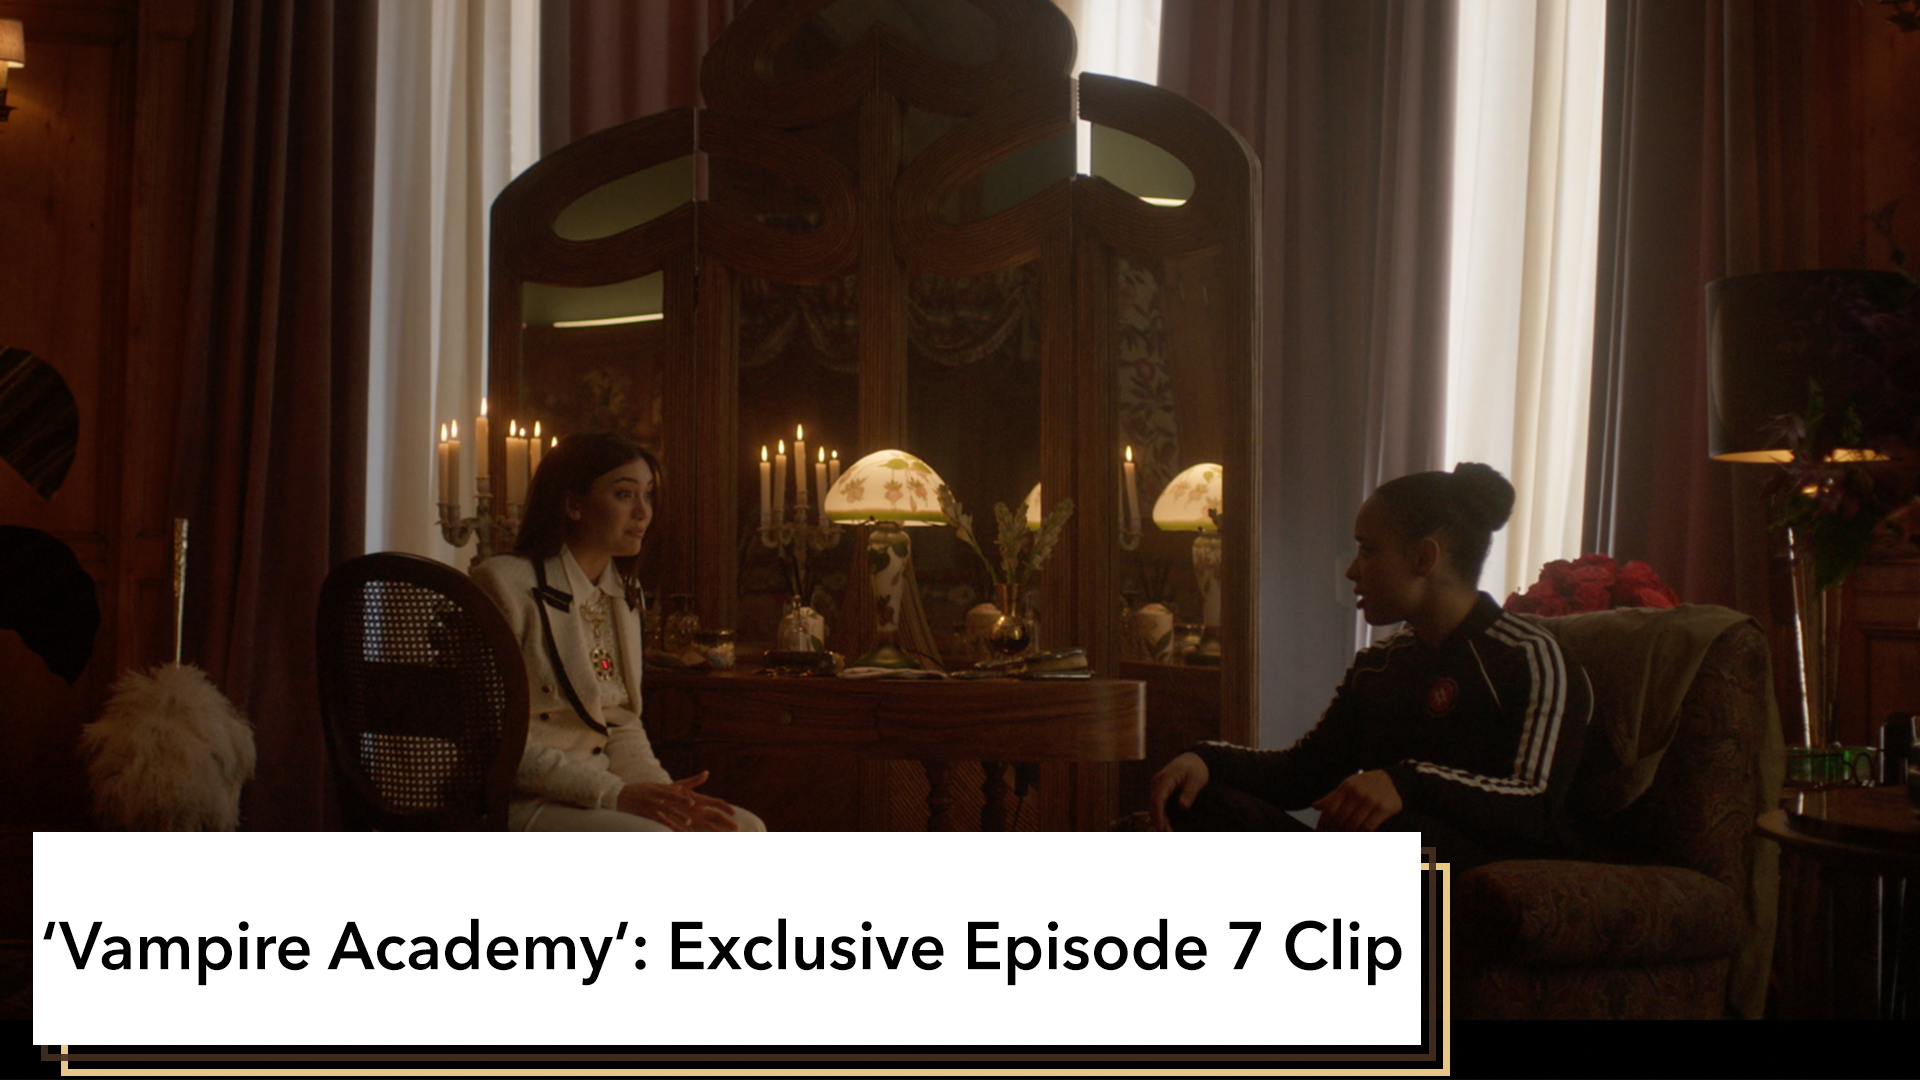 Exclusive: Get A Sneak-Peak At Episode 7 Of ‘Vampire Academy’